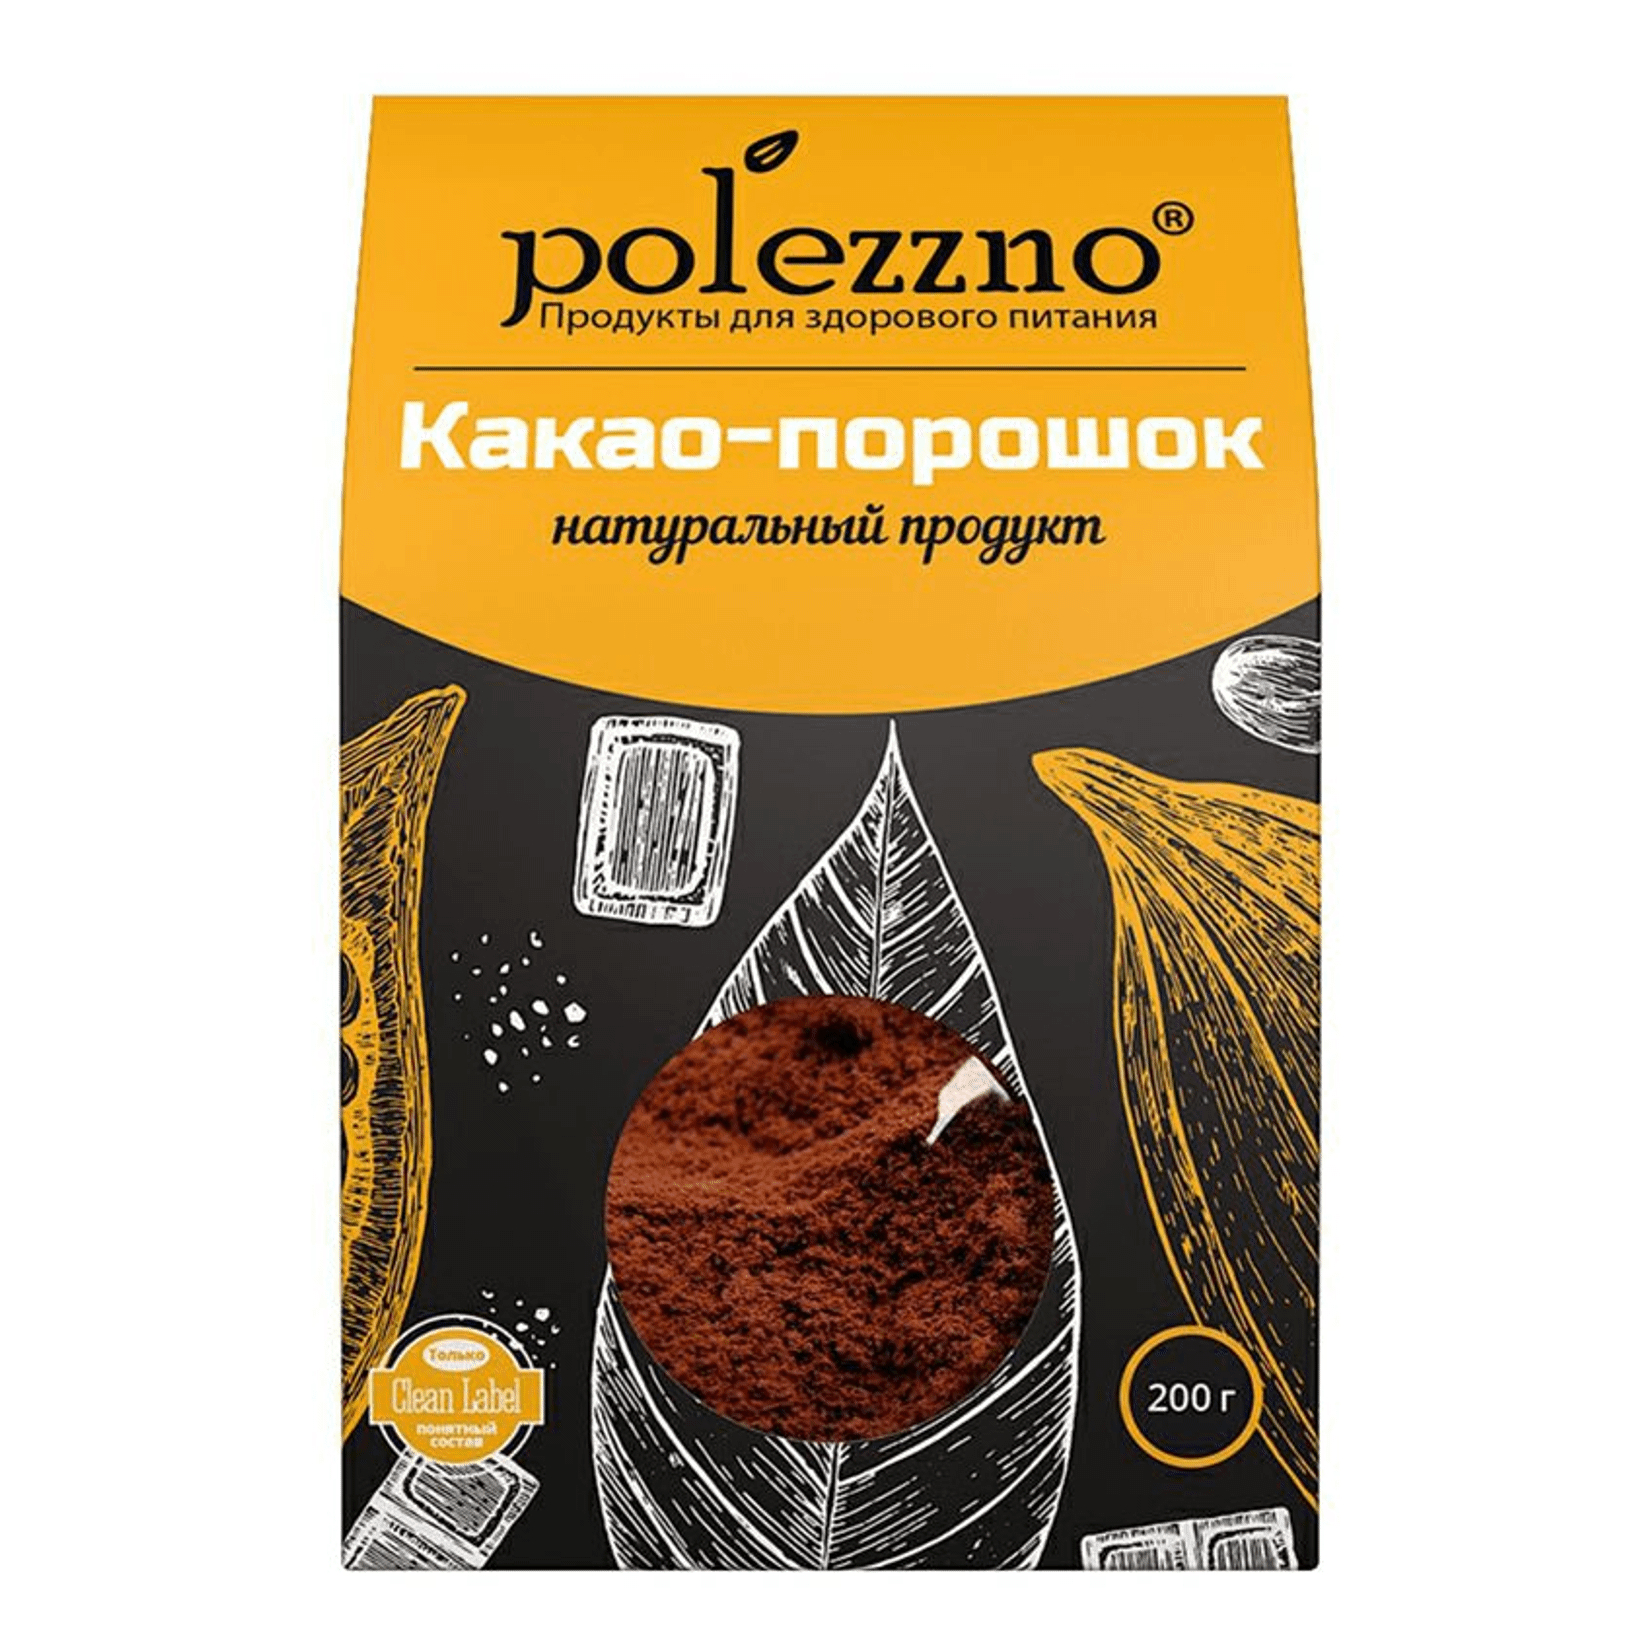 Какао порошок Polezzno натуральный, 200 г